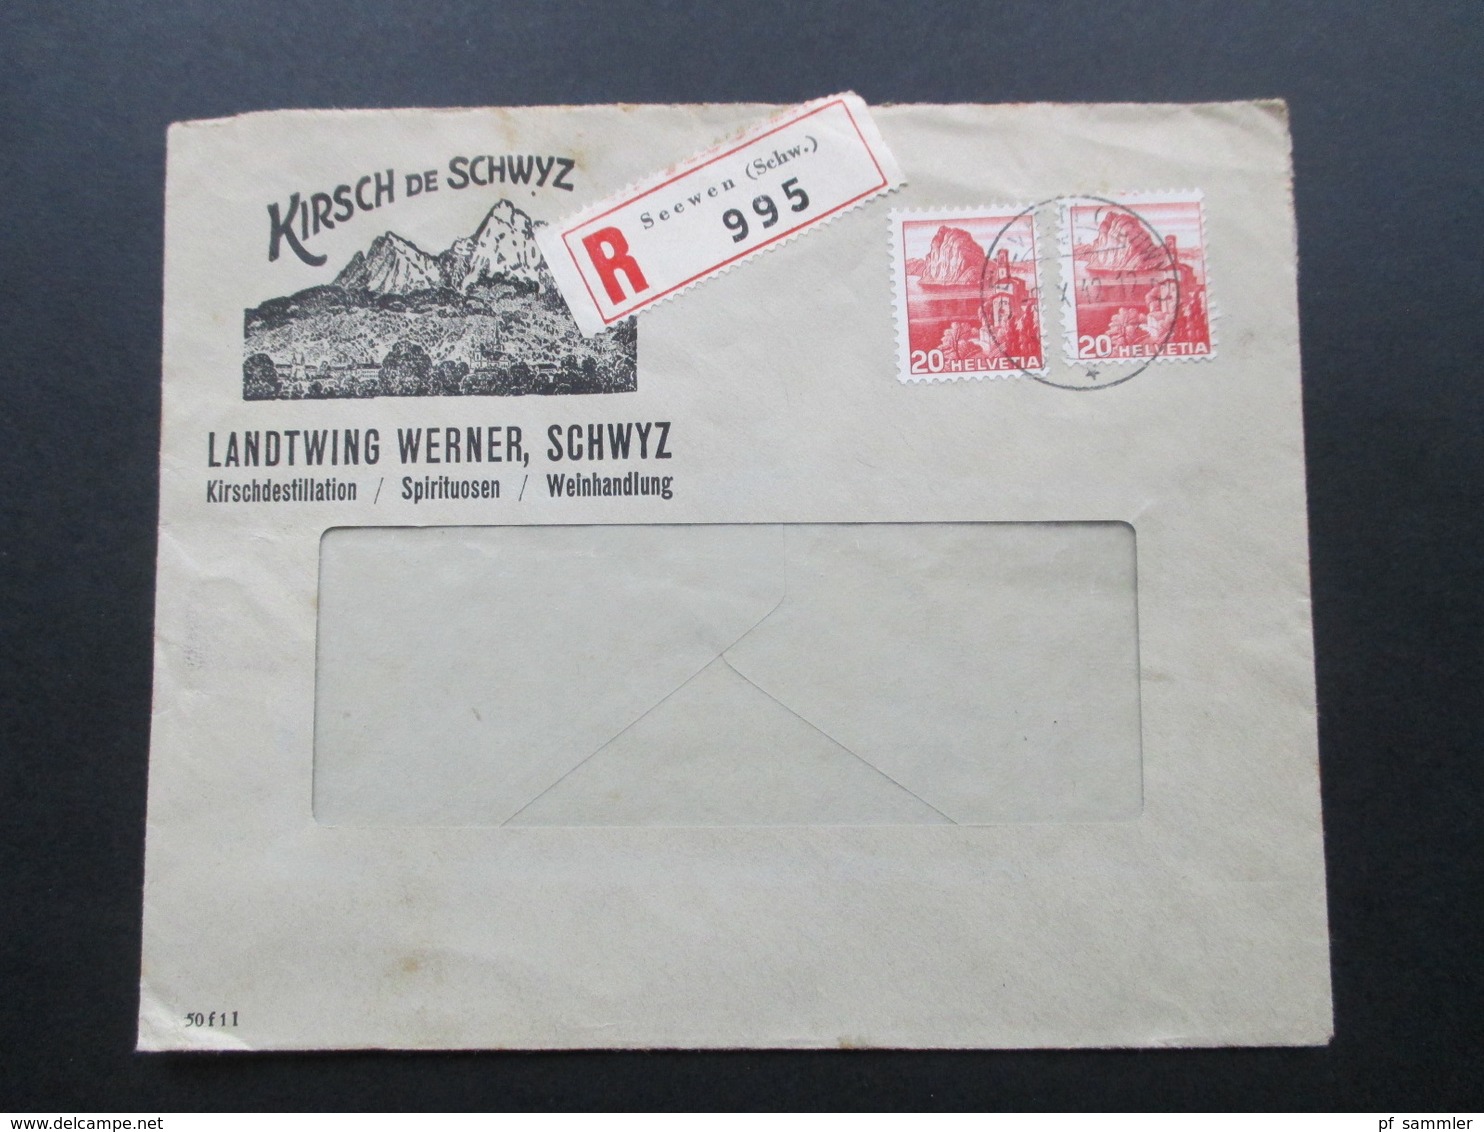 Schweiz 1942 Firmenbrief Kirsch De Schwyz Landtwing Werner. Kirschdetillation, Spirituosen, Weinhandlung. R-Brief Seewen - Cartas & Documentos